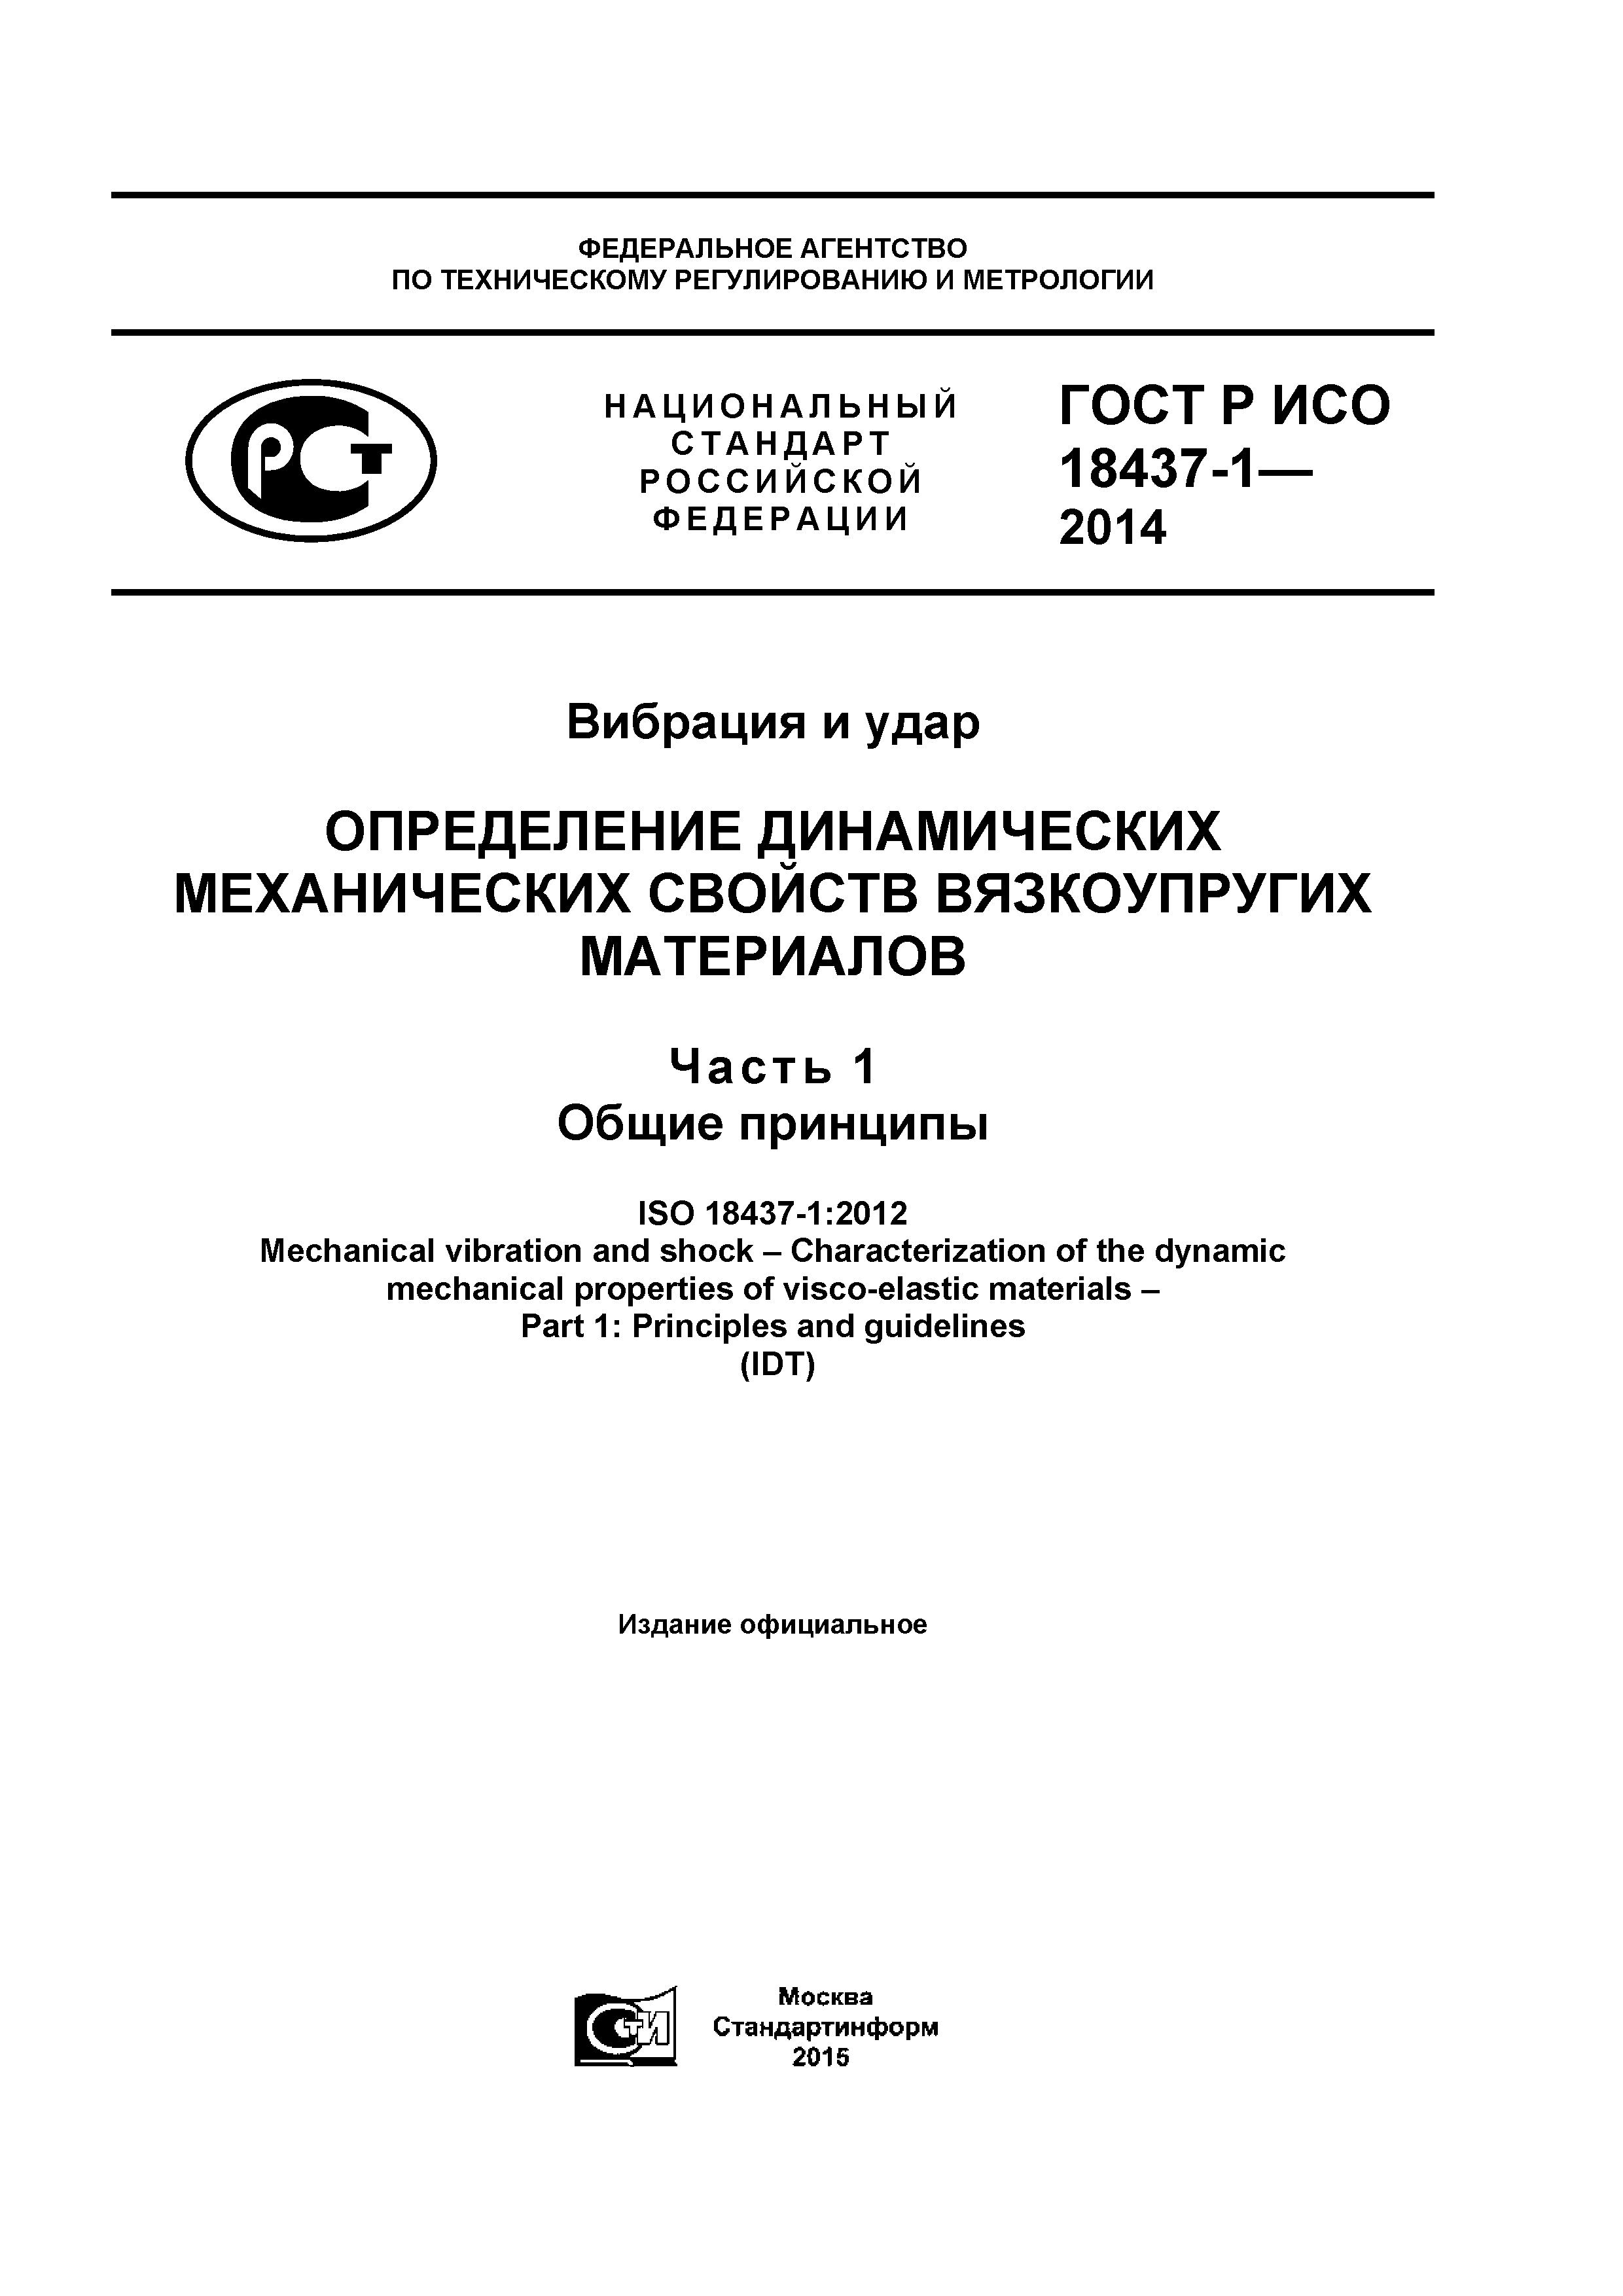 ГОСТ Р ИСО 18437-1-2014